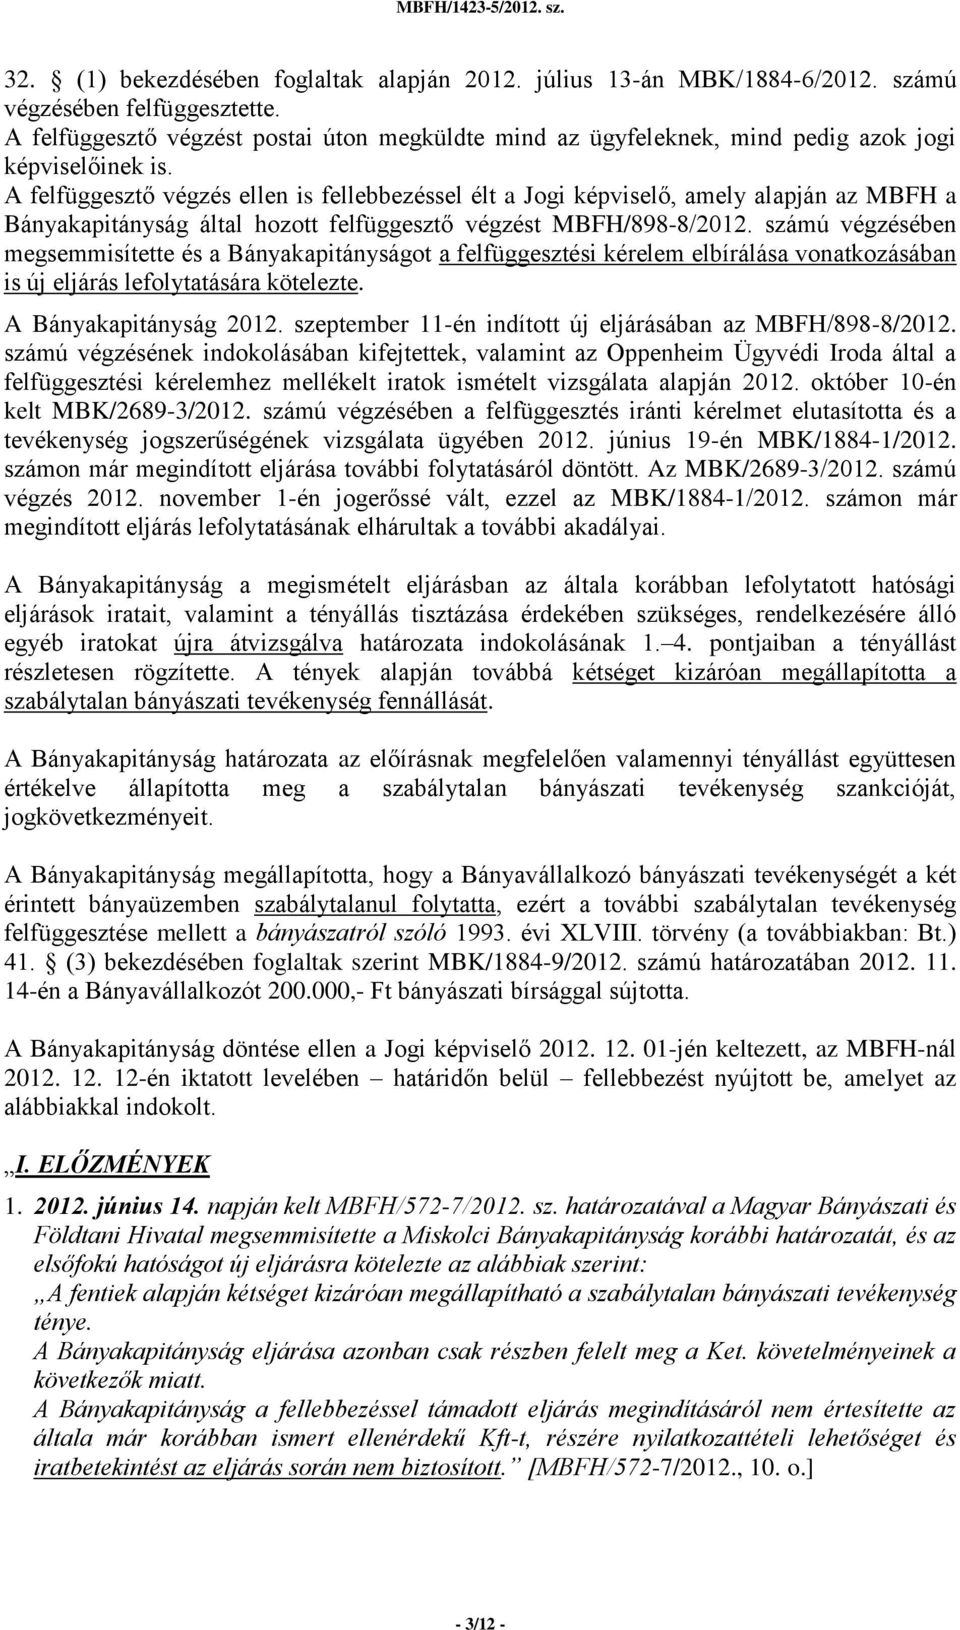 A felfüggesztő végzés ellen is fellebbezéssel élt a Jogi képviselő, amely alapján az MBFH a Bányakapitányság által hozott felfüggesztő végzést MBFH/898-8/2012.